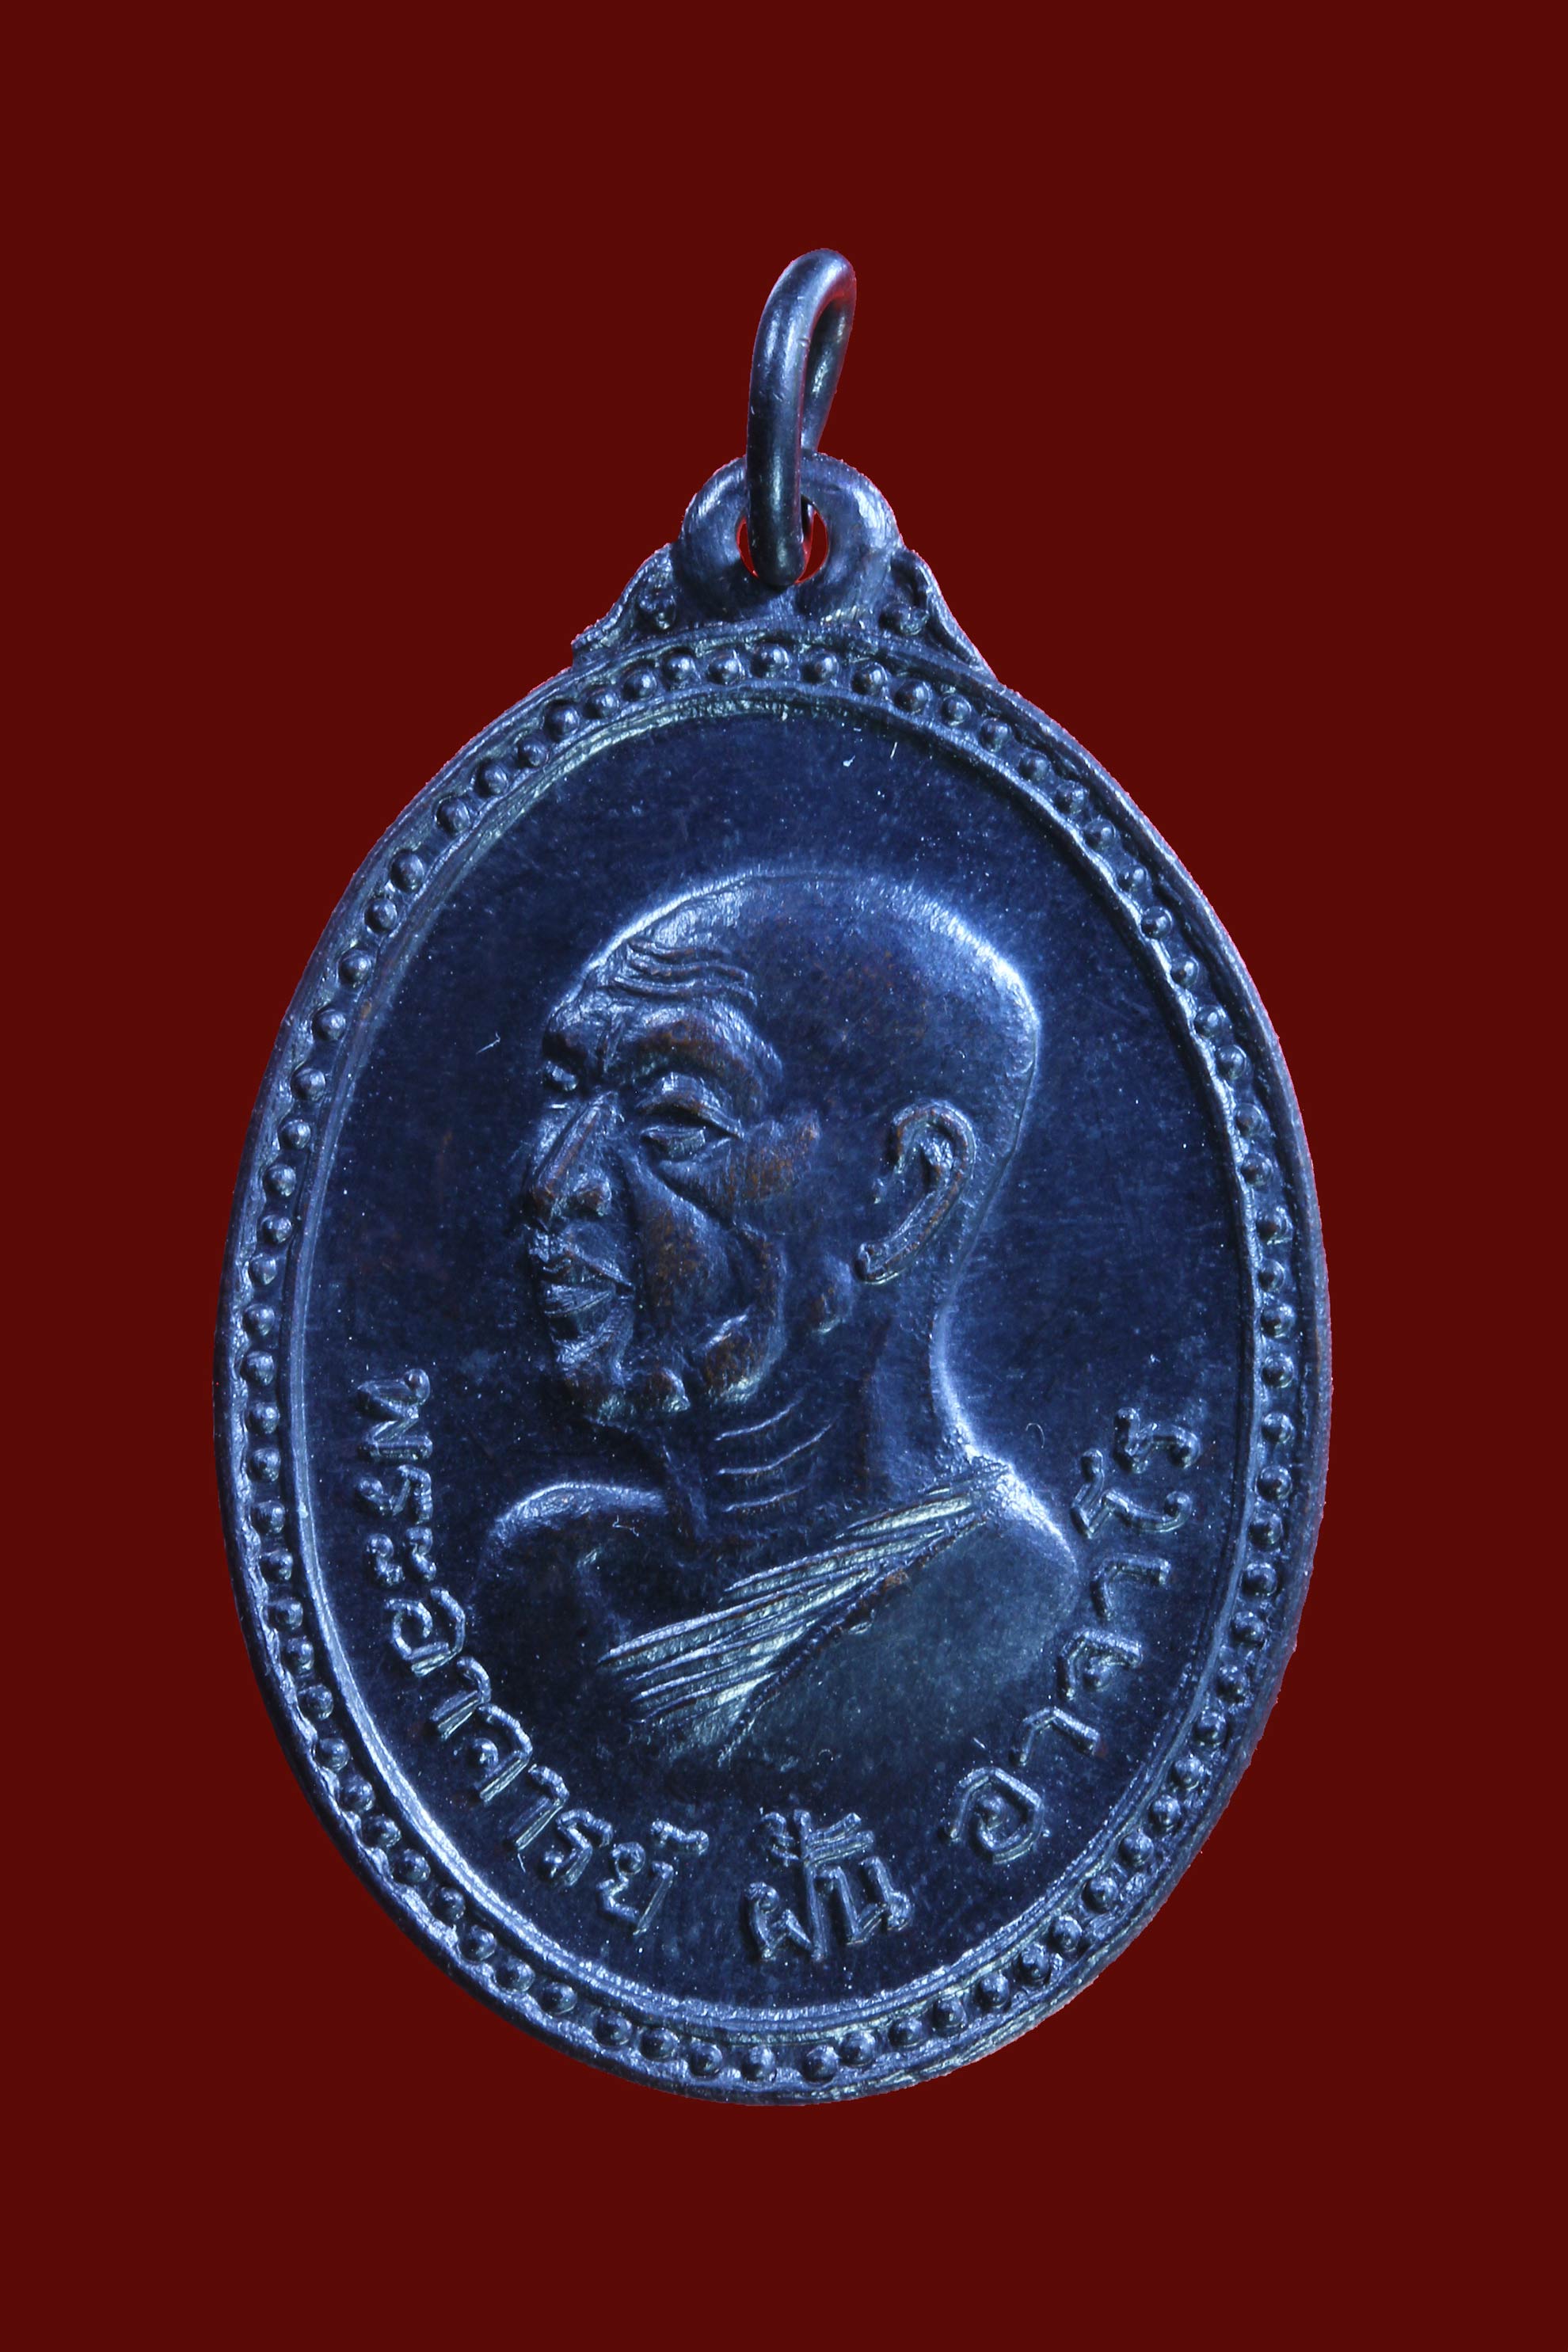 เหรียญพระอาจารย์ฝั้น รุ่นที่ 40 ที่ระลึกเปิดอบรมวิปัสนาน้ำตกกะอาง สร้างเมื่อวันที่ 22 ธันวาคม 2516 เนื้อทองแดงรมดำ